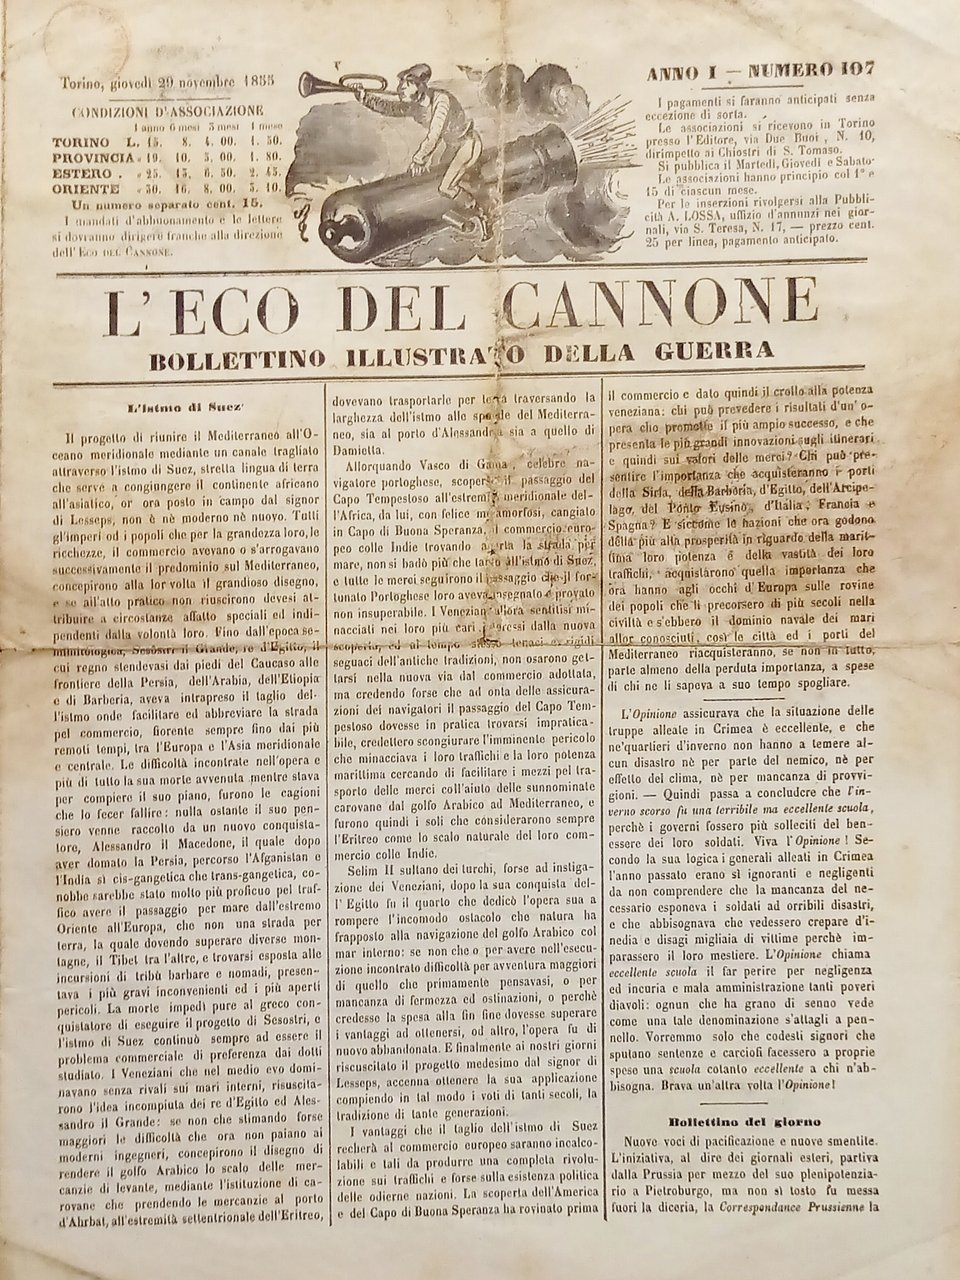 Bollettino Illustrato della Guerra - L'Eco del Cannone N. 107 …